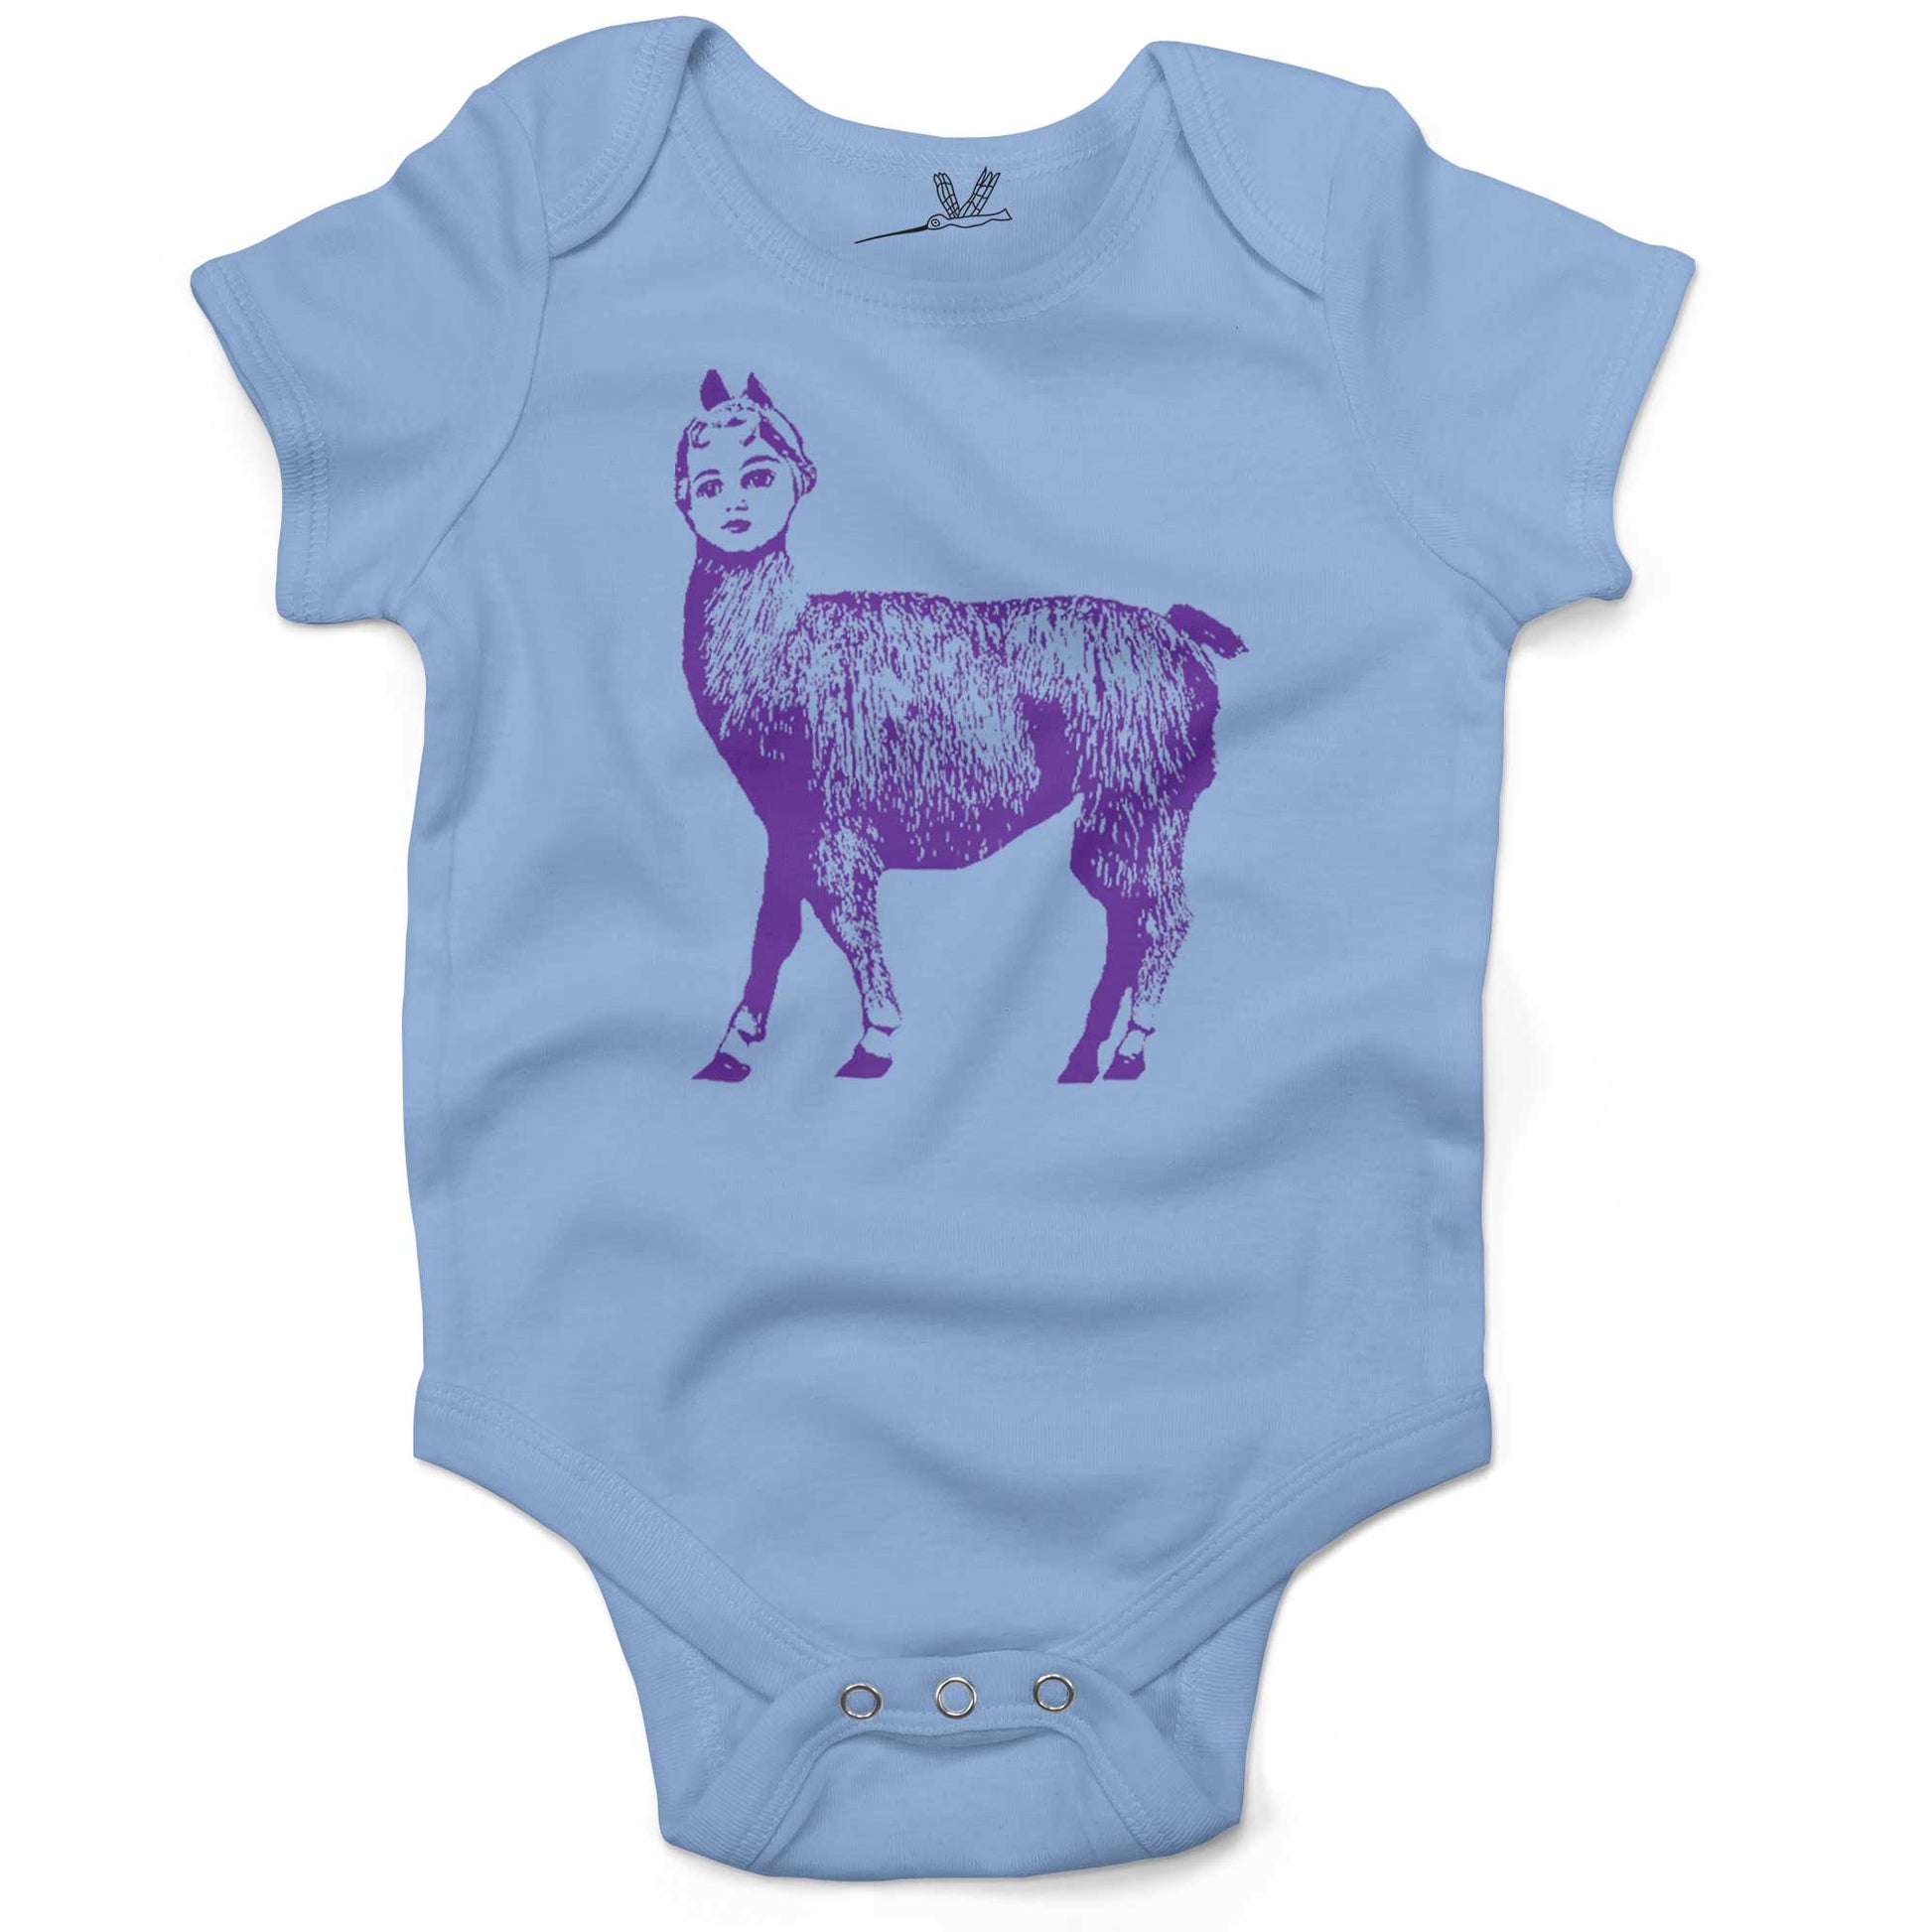 Dolly Llama Infant Bodysuit or Raglan Baby Tee-Organic Baby Blue-3-6 months